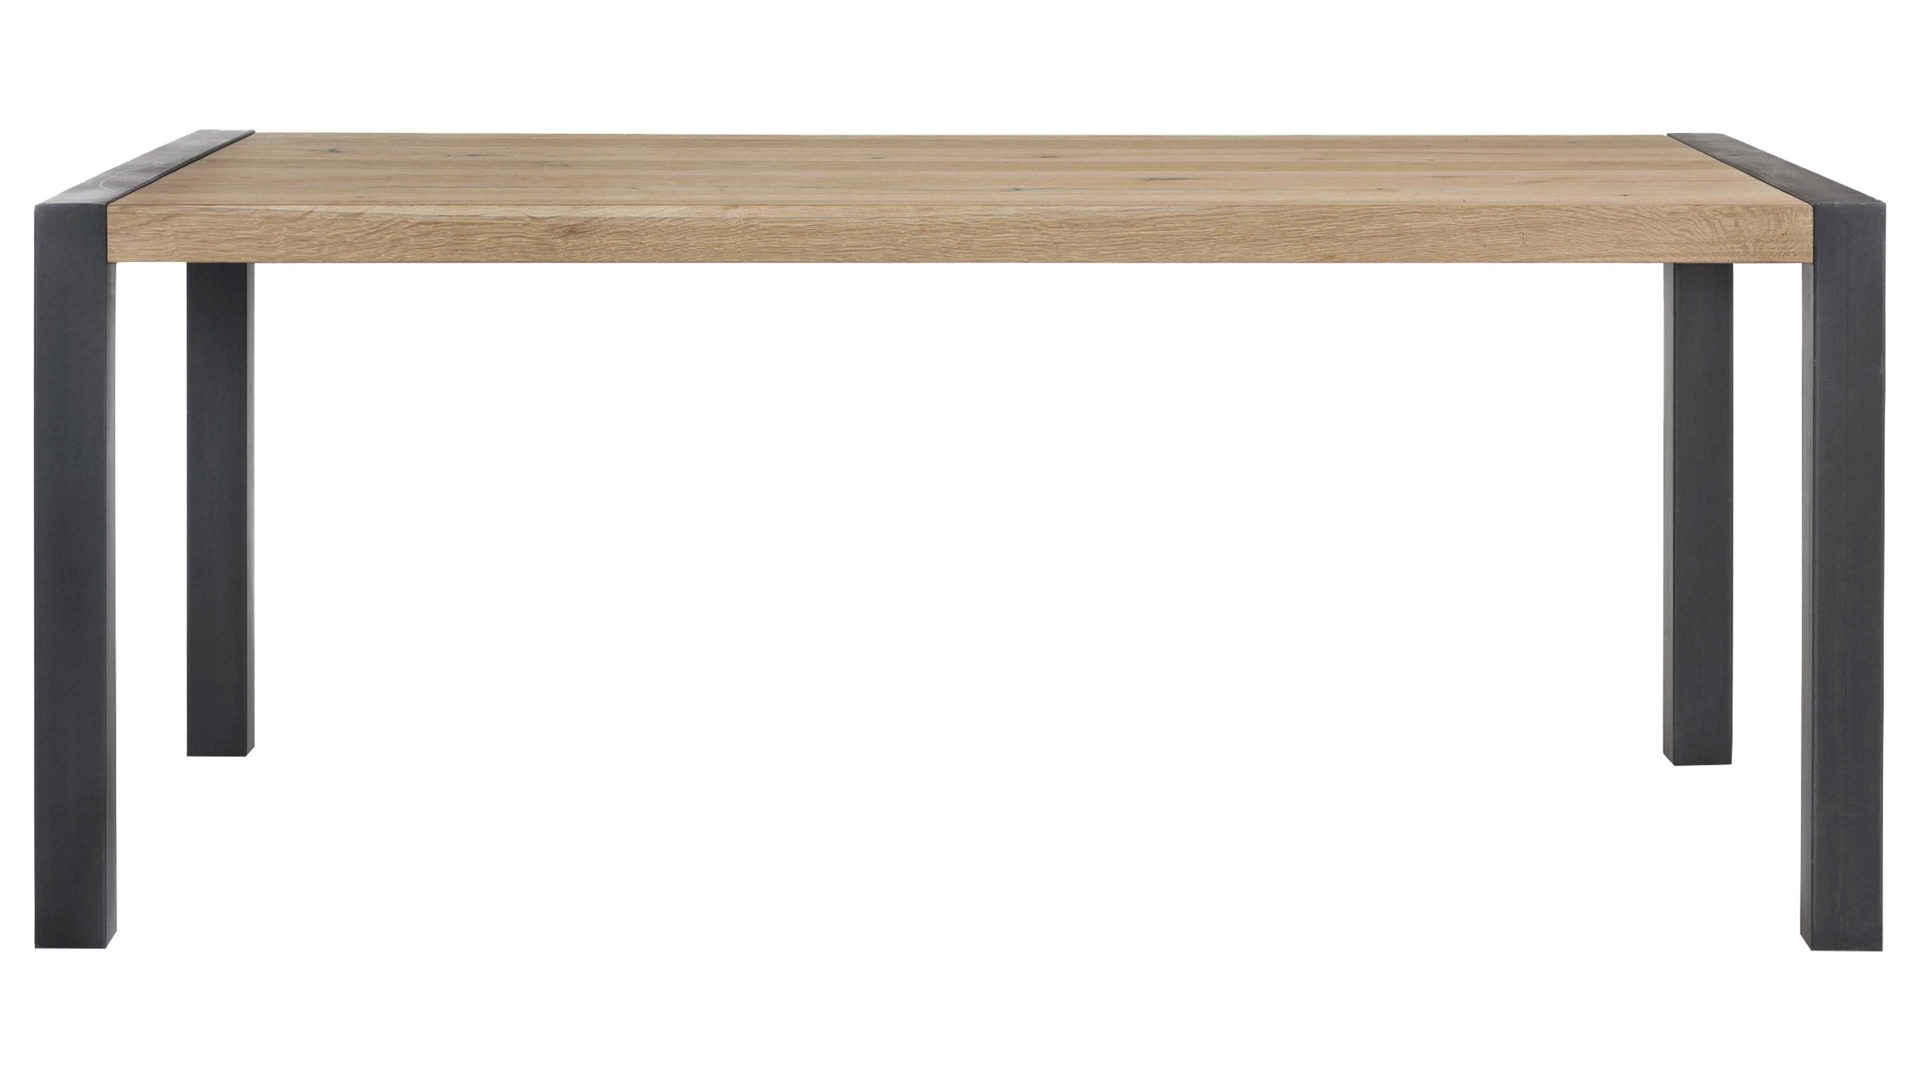 Esstisch Habufa aus Holz in Holzfarben HABUFA Esstisch bzw. Esszimmermöbel Brooklyn Railway braunes Eichefurnier – ca. 160 x 100 cm